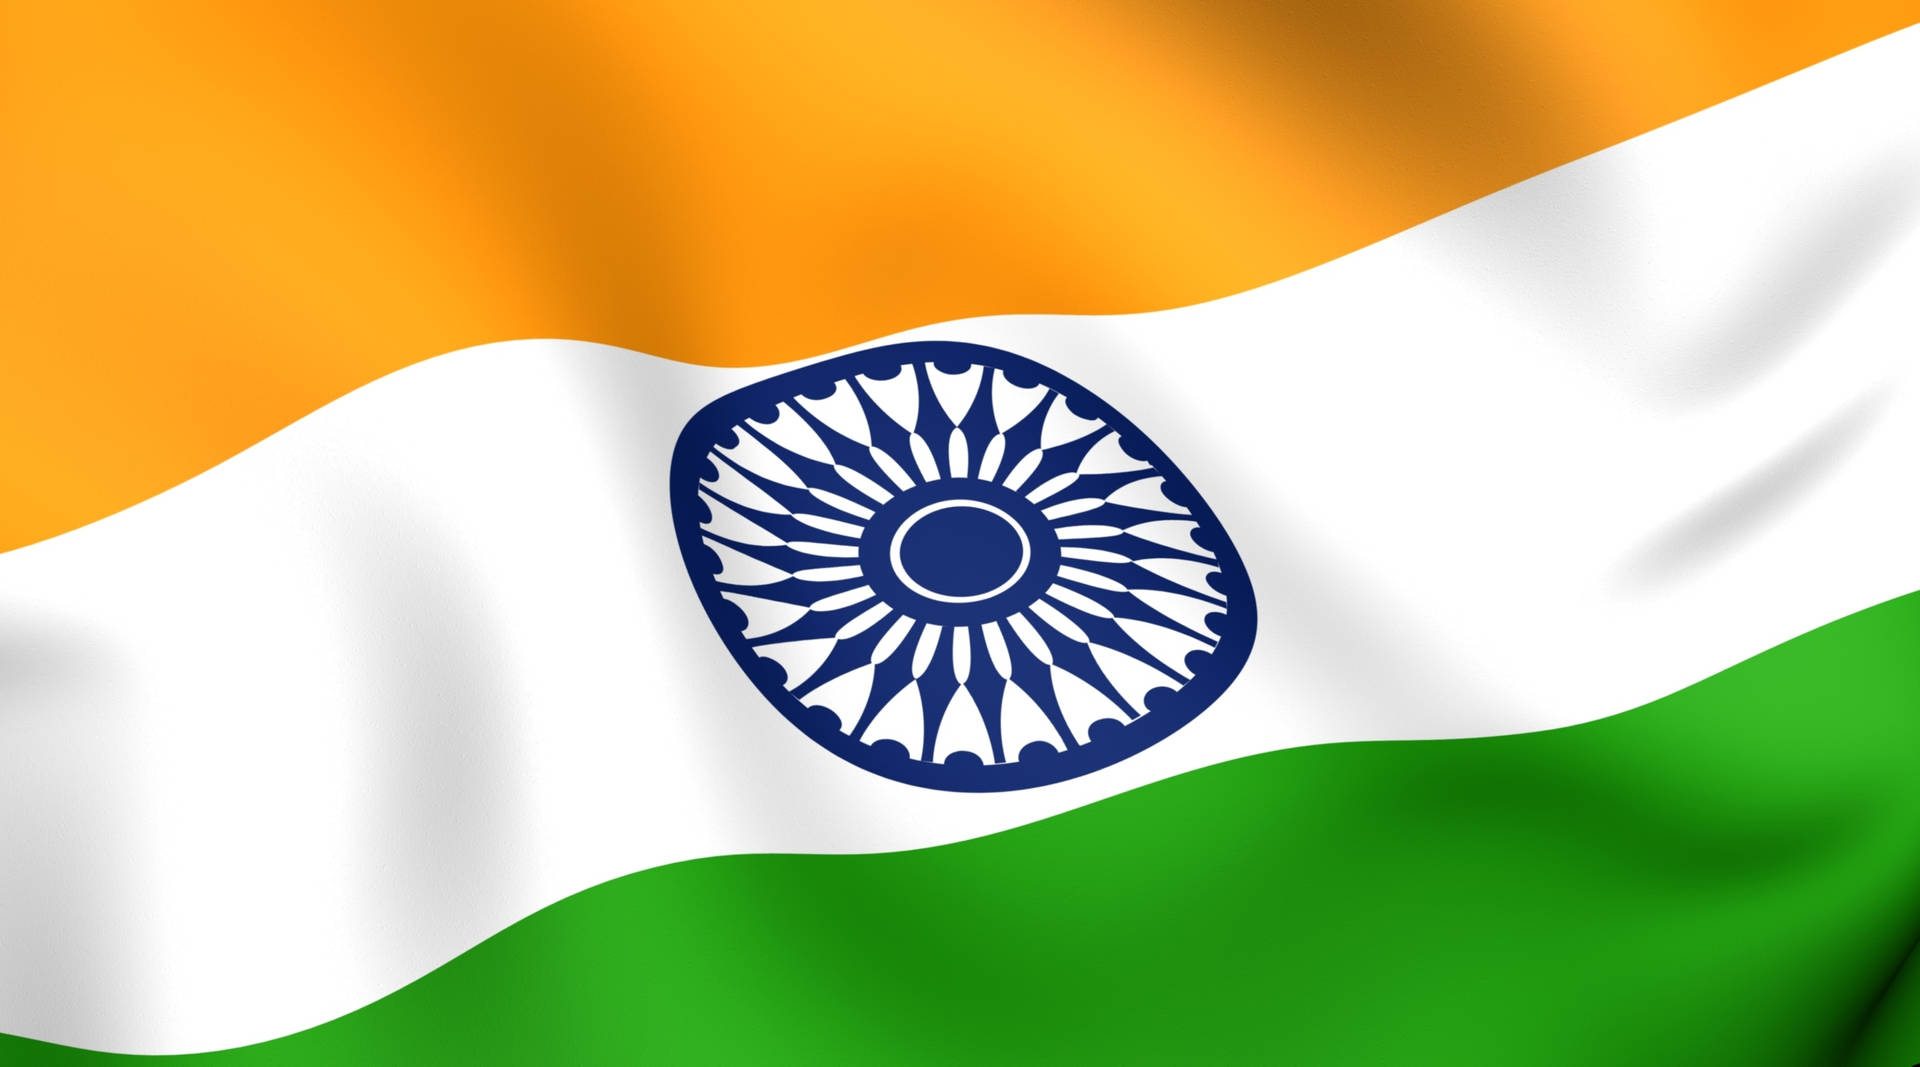 Wavy Indian Flag Background